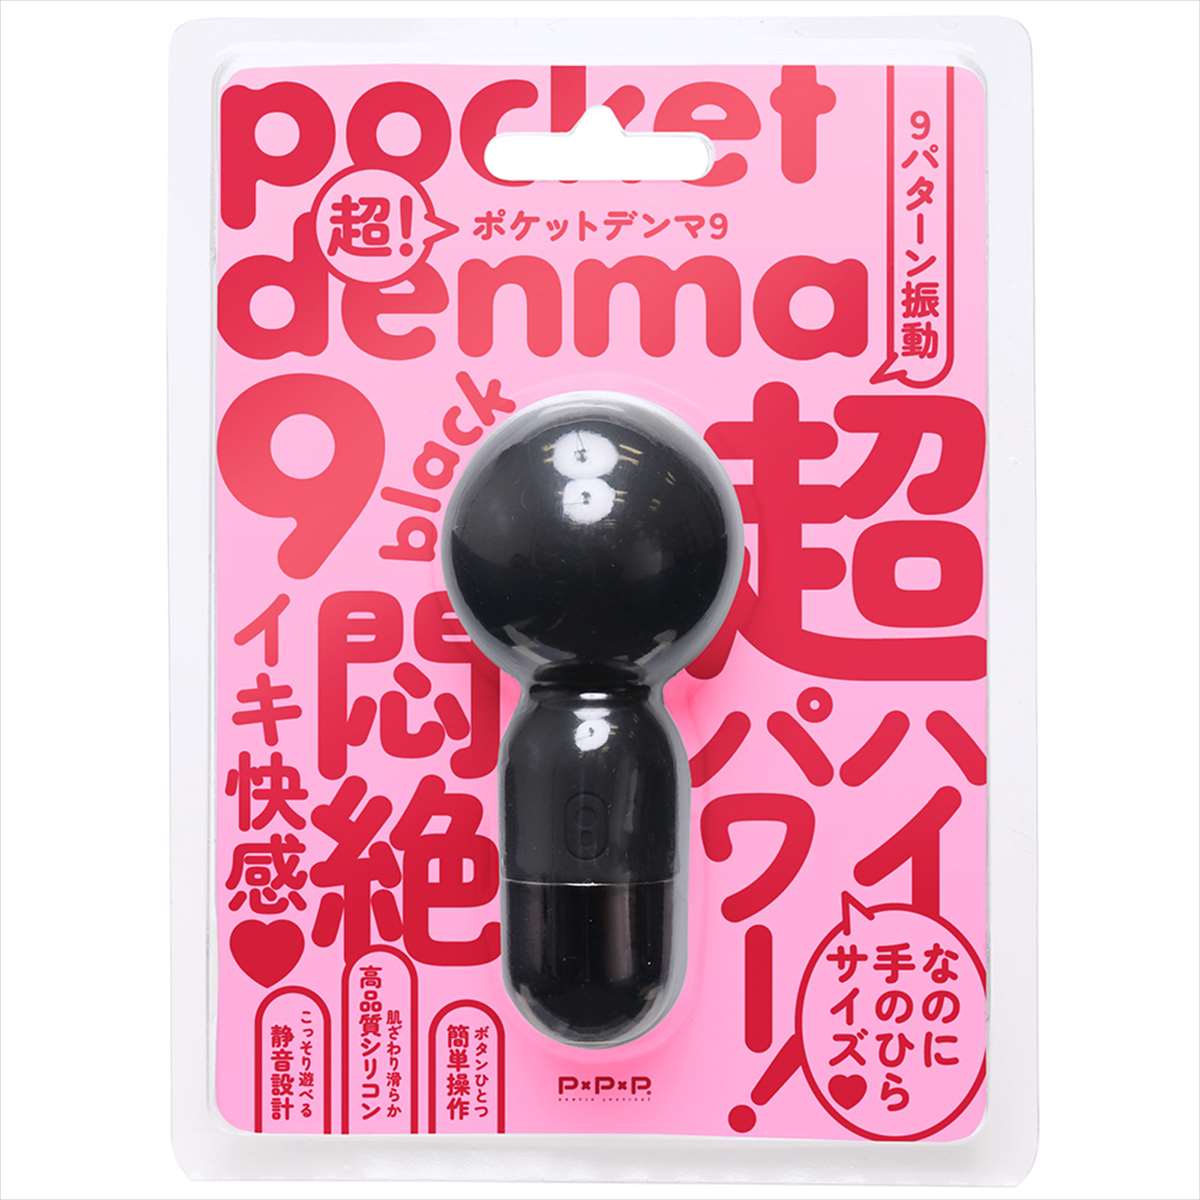 !pocket-denma9 [߹9] black